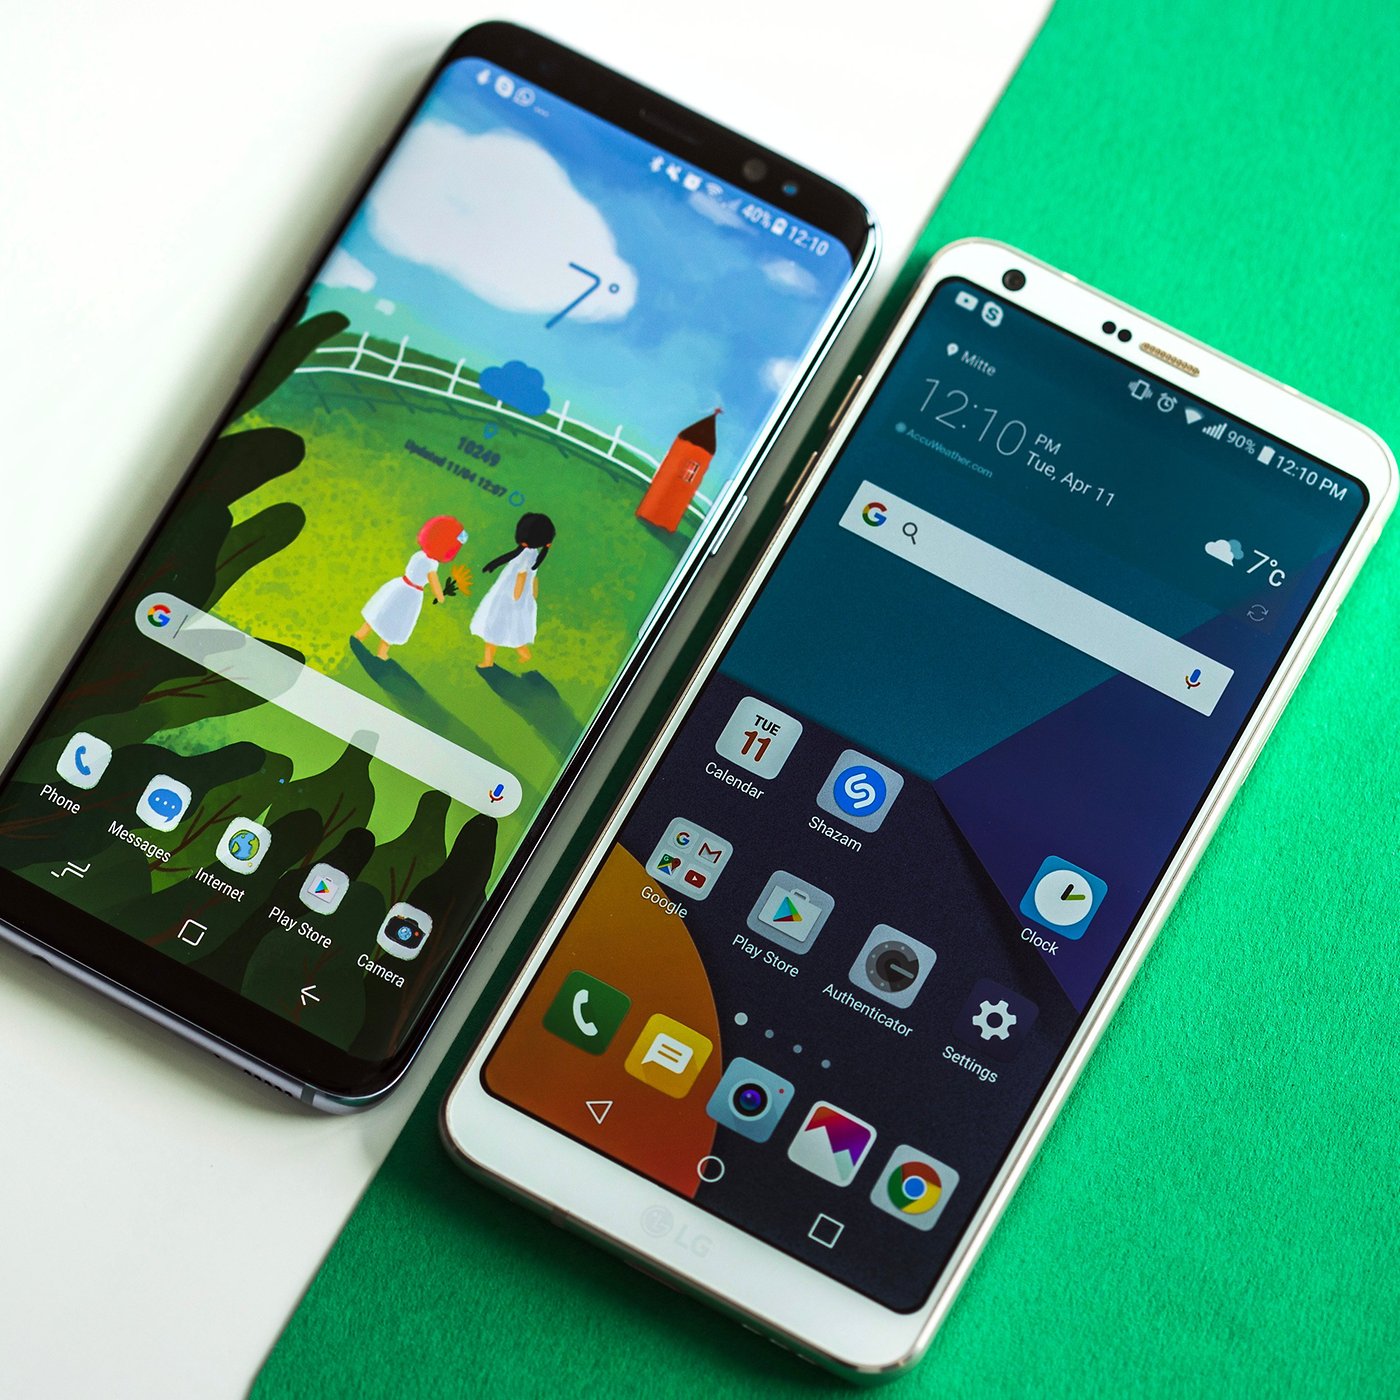 Disparates familia real bomba Samsung Galaxy S8 vs LG G6: Comparación preliminar | NextPit